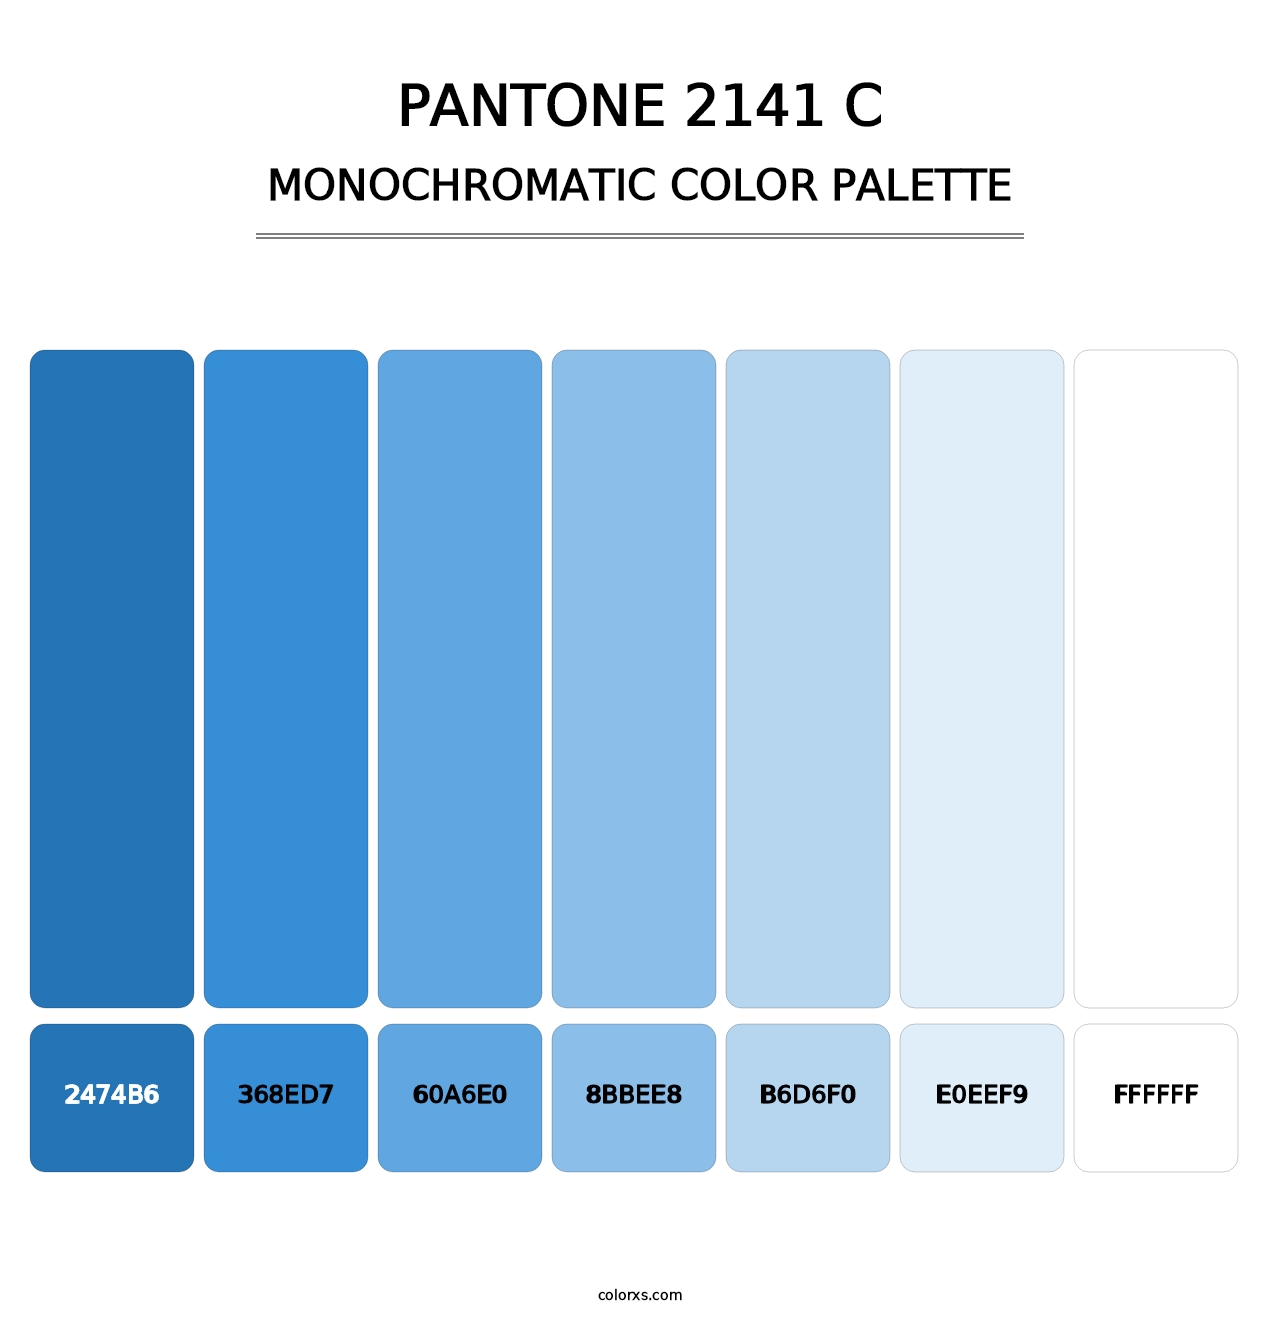 PANTONE 2141 C - Monochromatic Color Palette